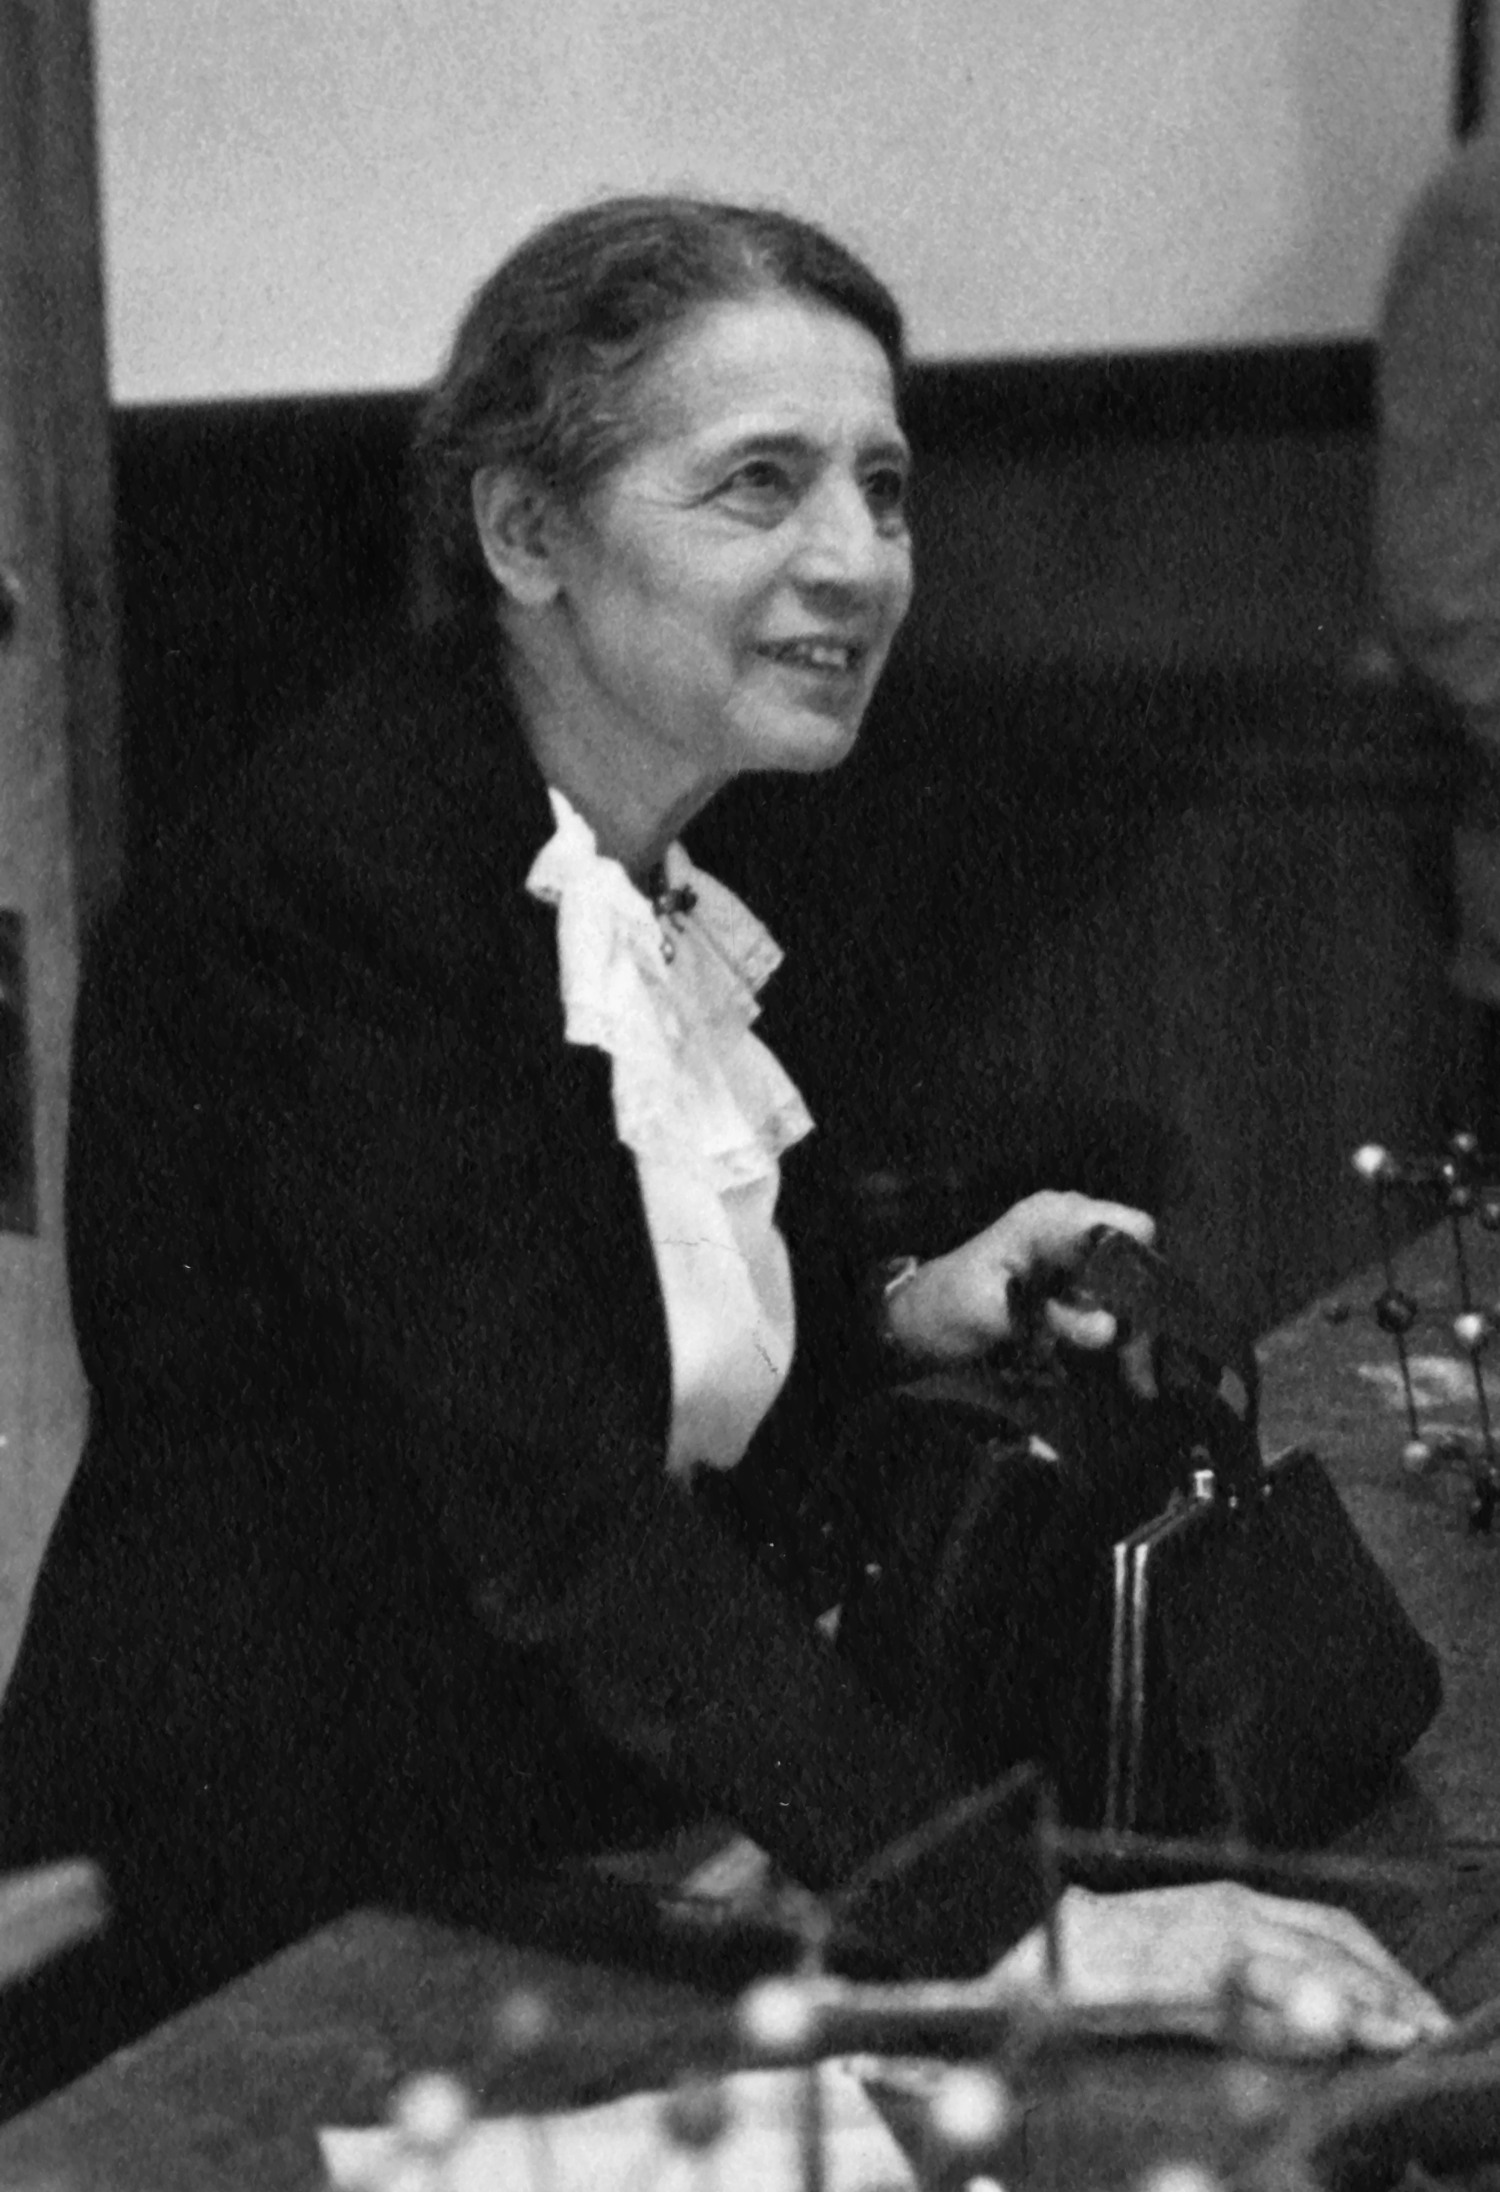 Lise_Meitner_(1878-1968),_lecturing_at_Catholic_University,_Washington,_D.C.,_1946